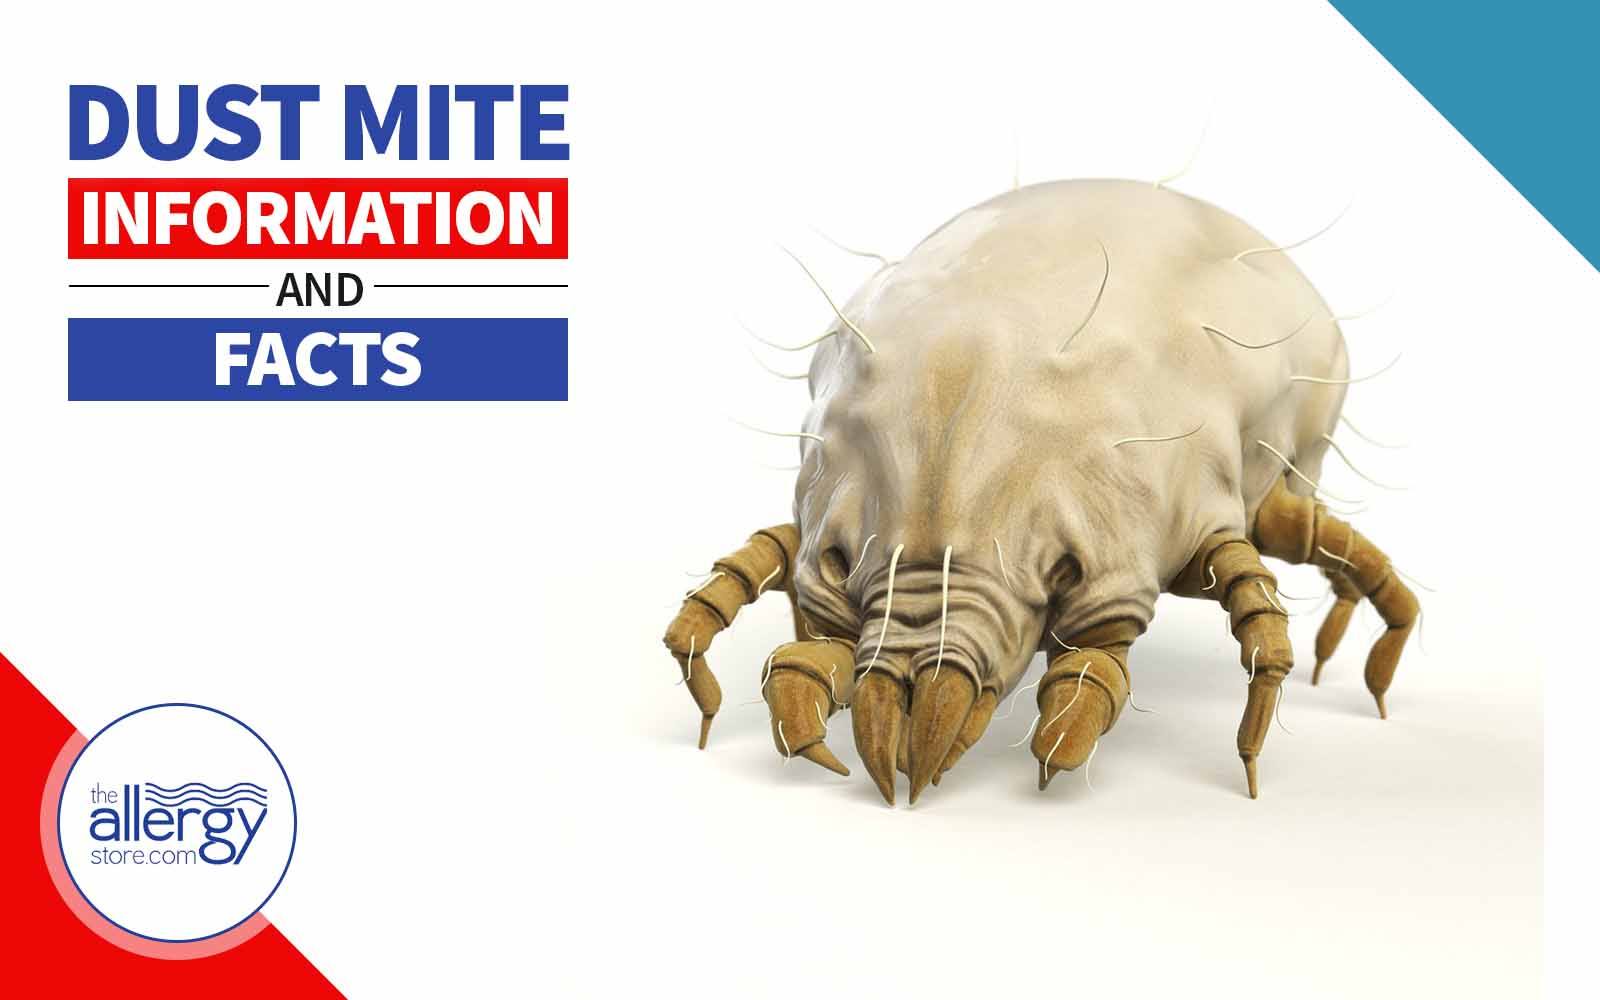 dust mites bites